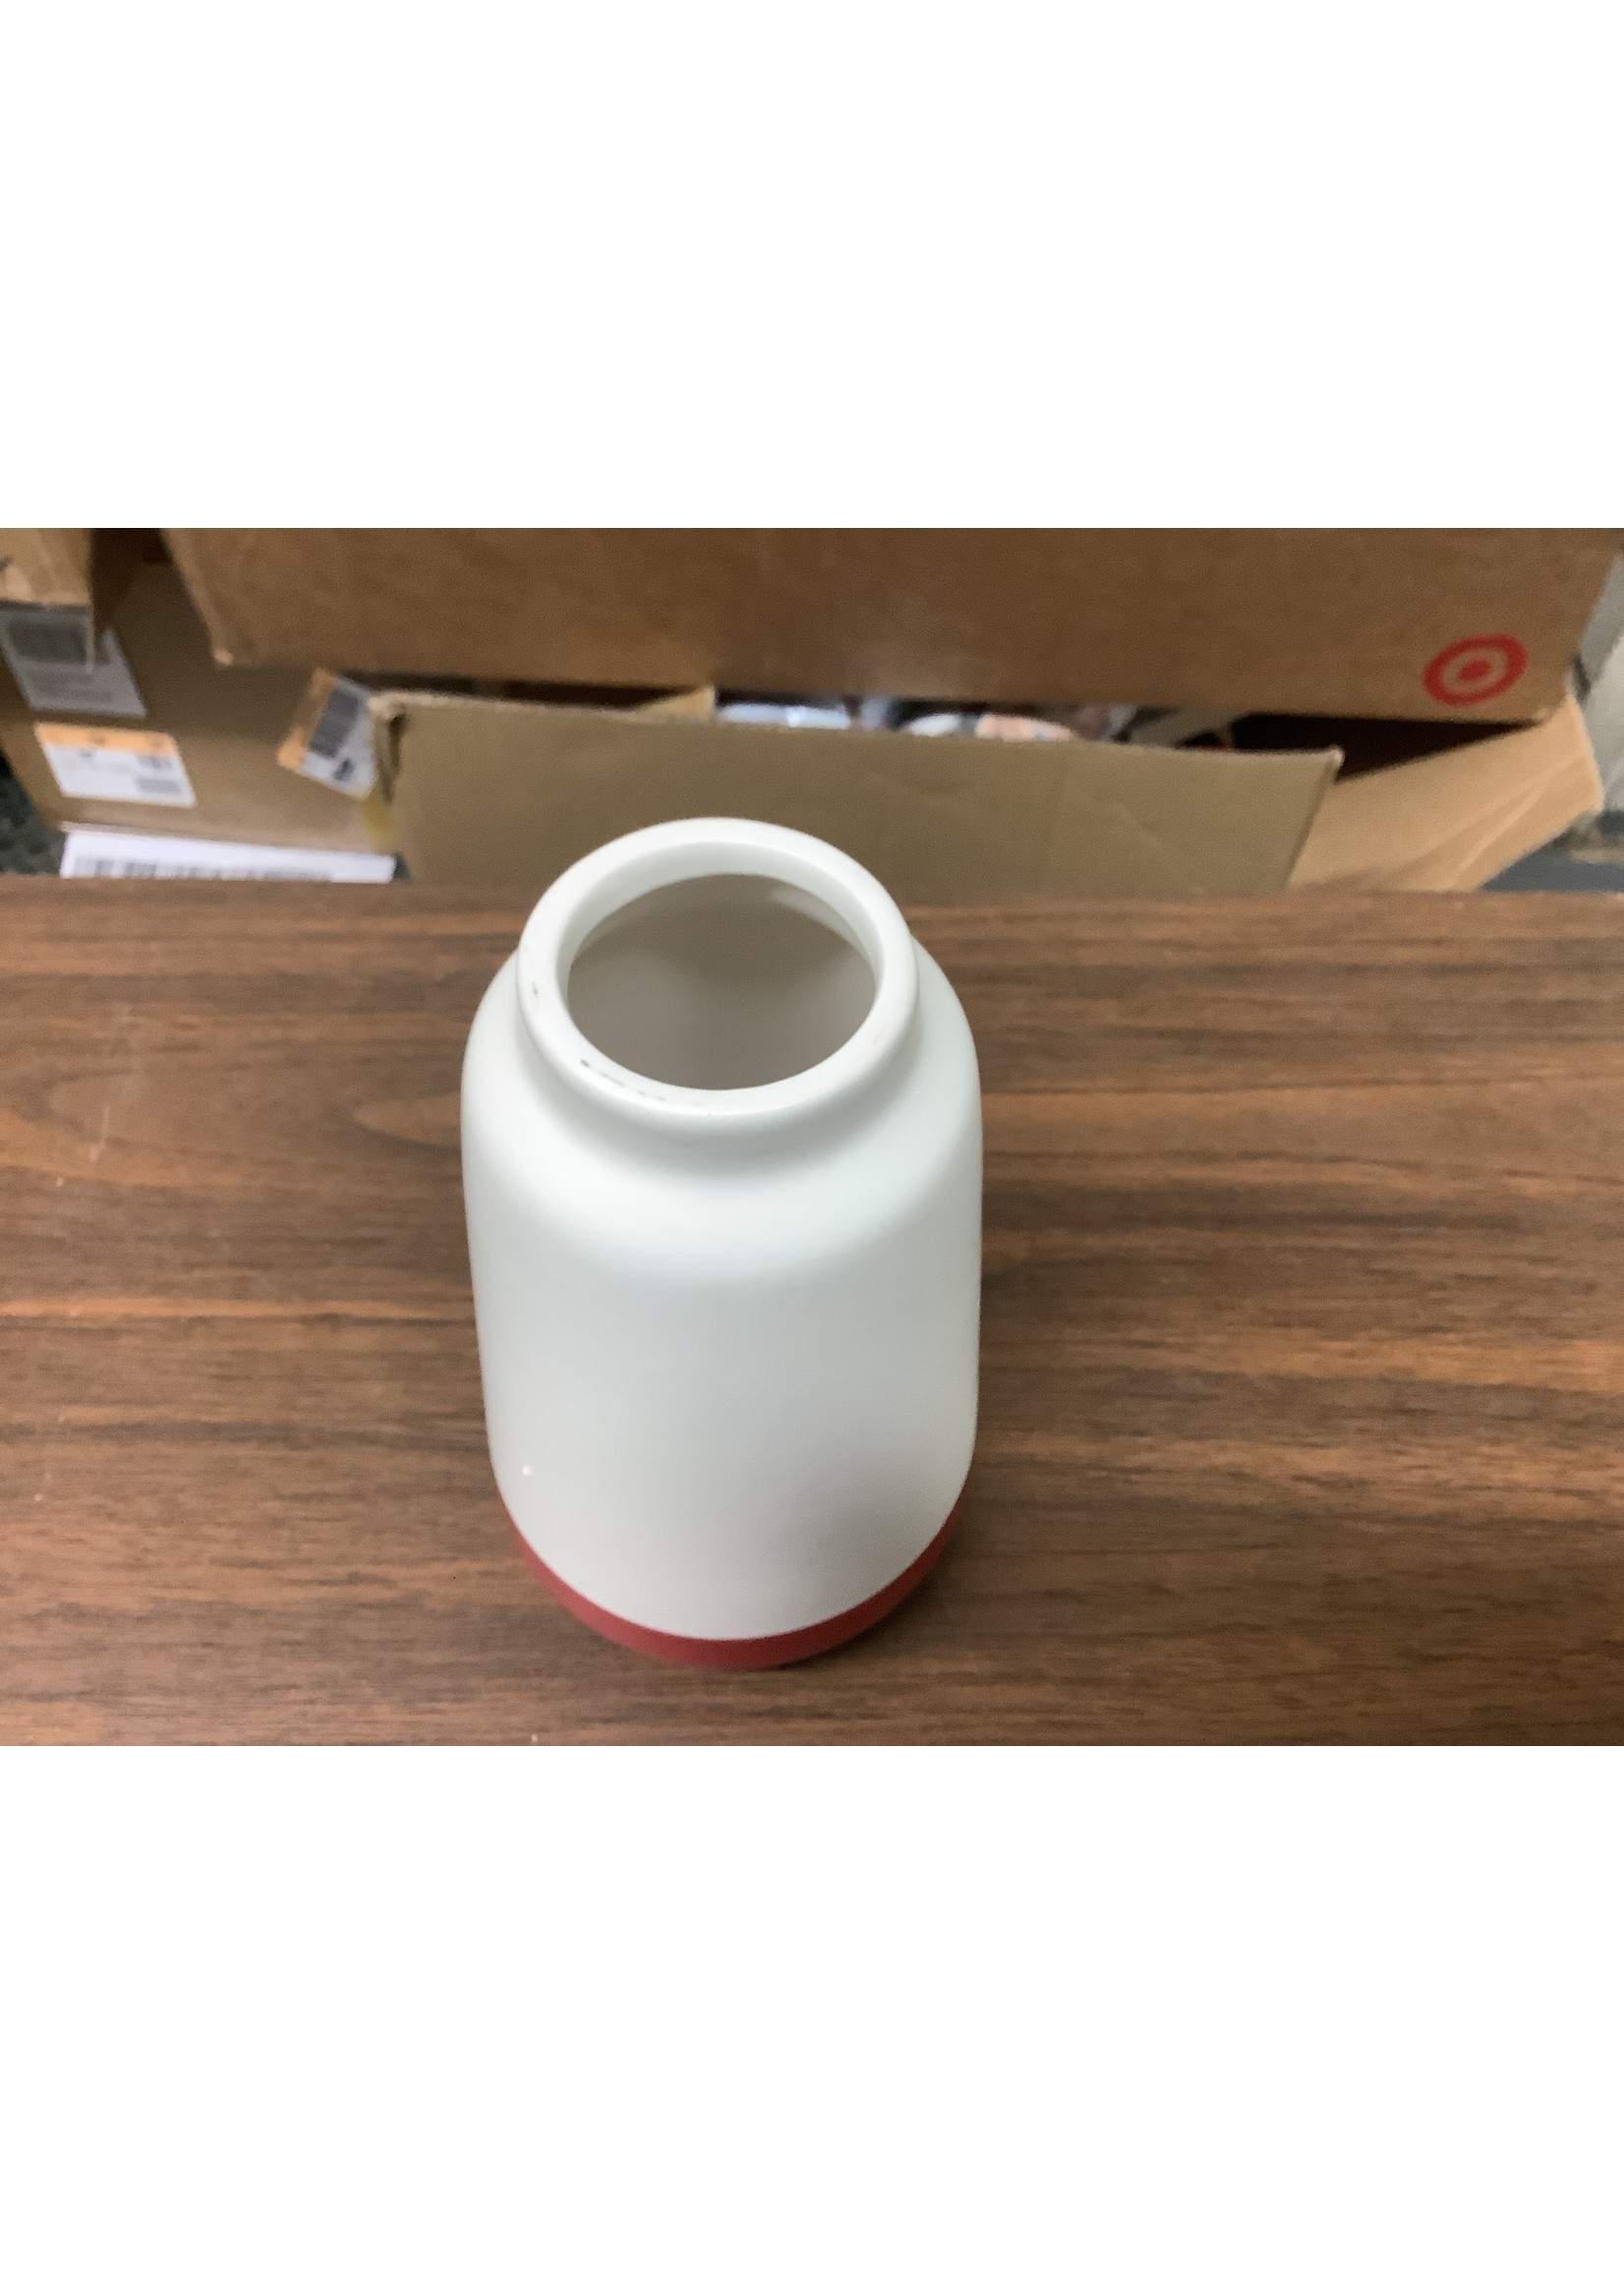 White w/ Red Stripe Ceramic Vase 6 3/4” x 3 1/2”